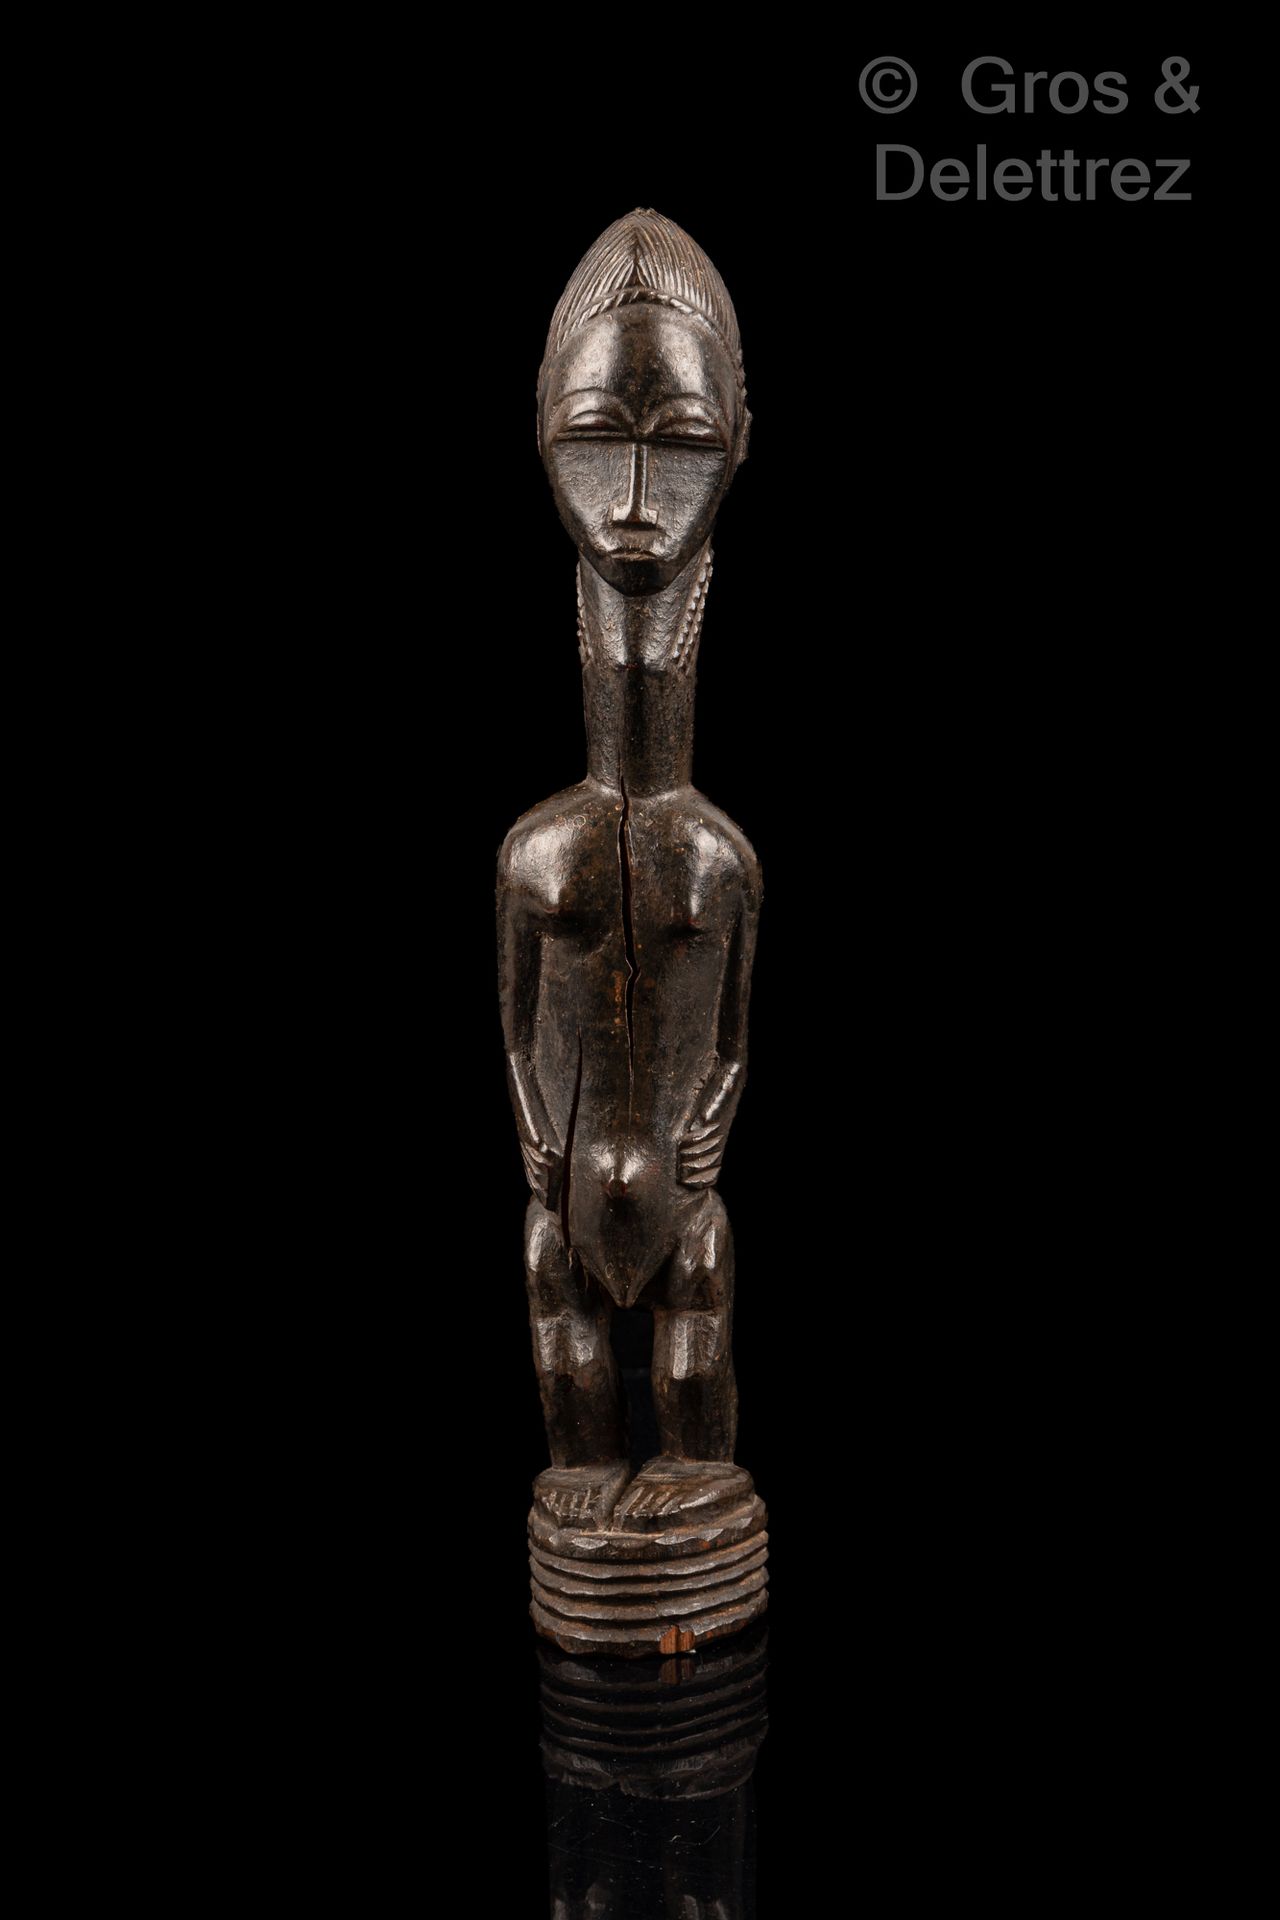 Null 男性雕像

包勒人

象牙海岸

木头

H.29厘米

古典鲍尔雕像的男性模型。纤细的脖子上有一张精致而宁静的脸，与雕塑其他部分的紧凑结构相抵消。美&hellip;